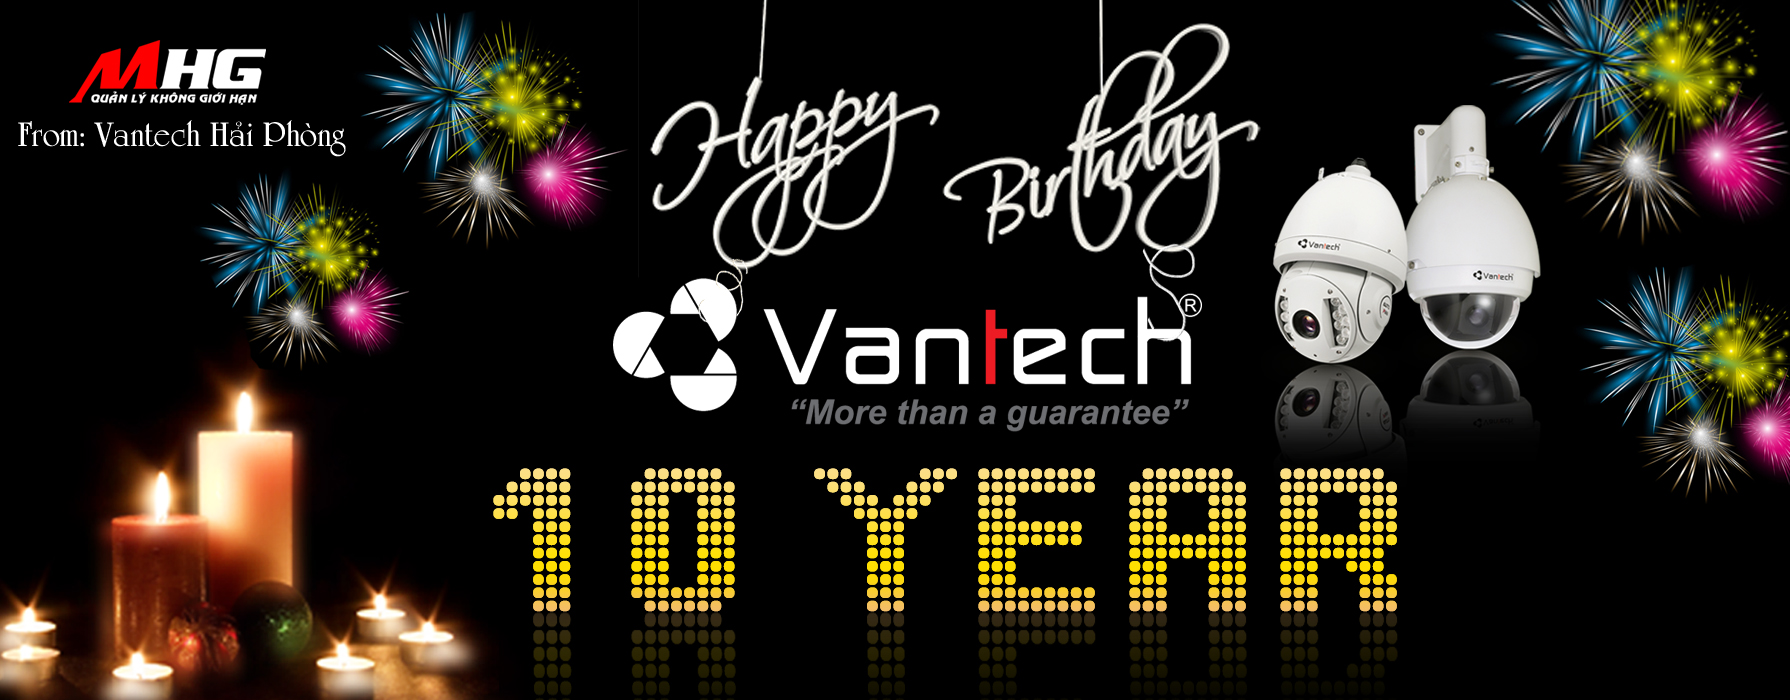 Vantech 10 năm một chặng đường